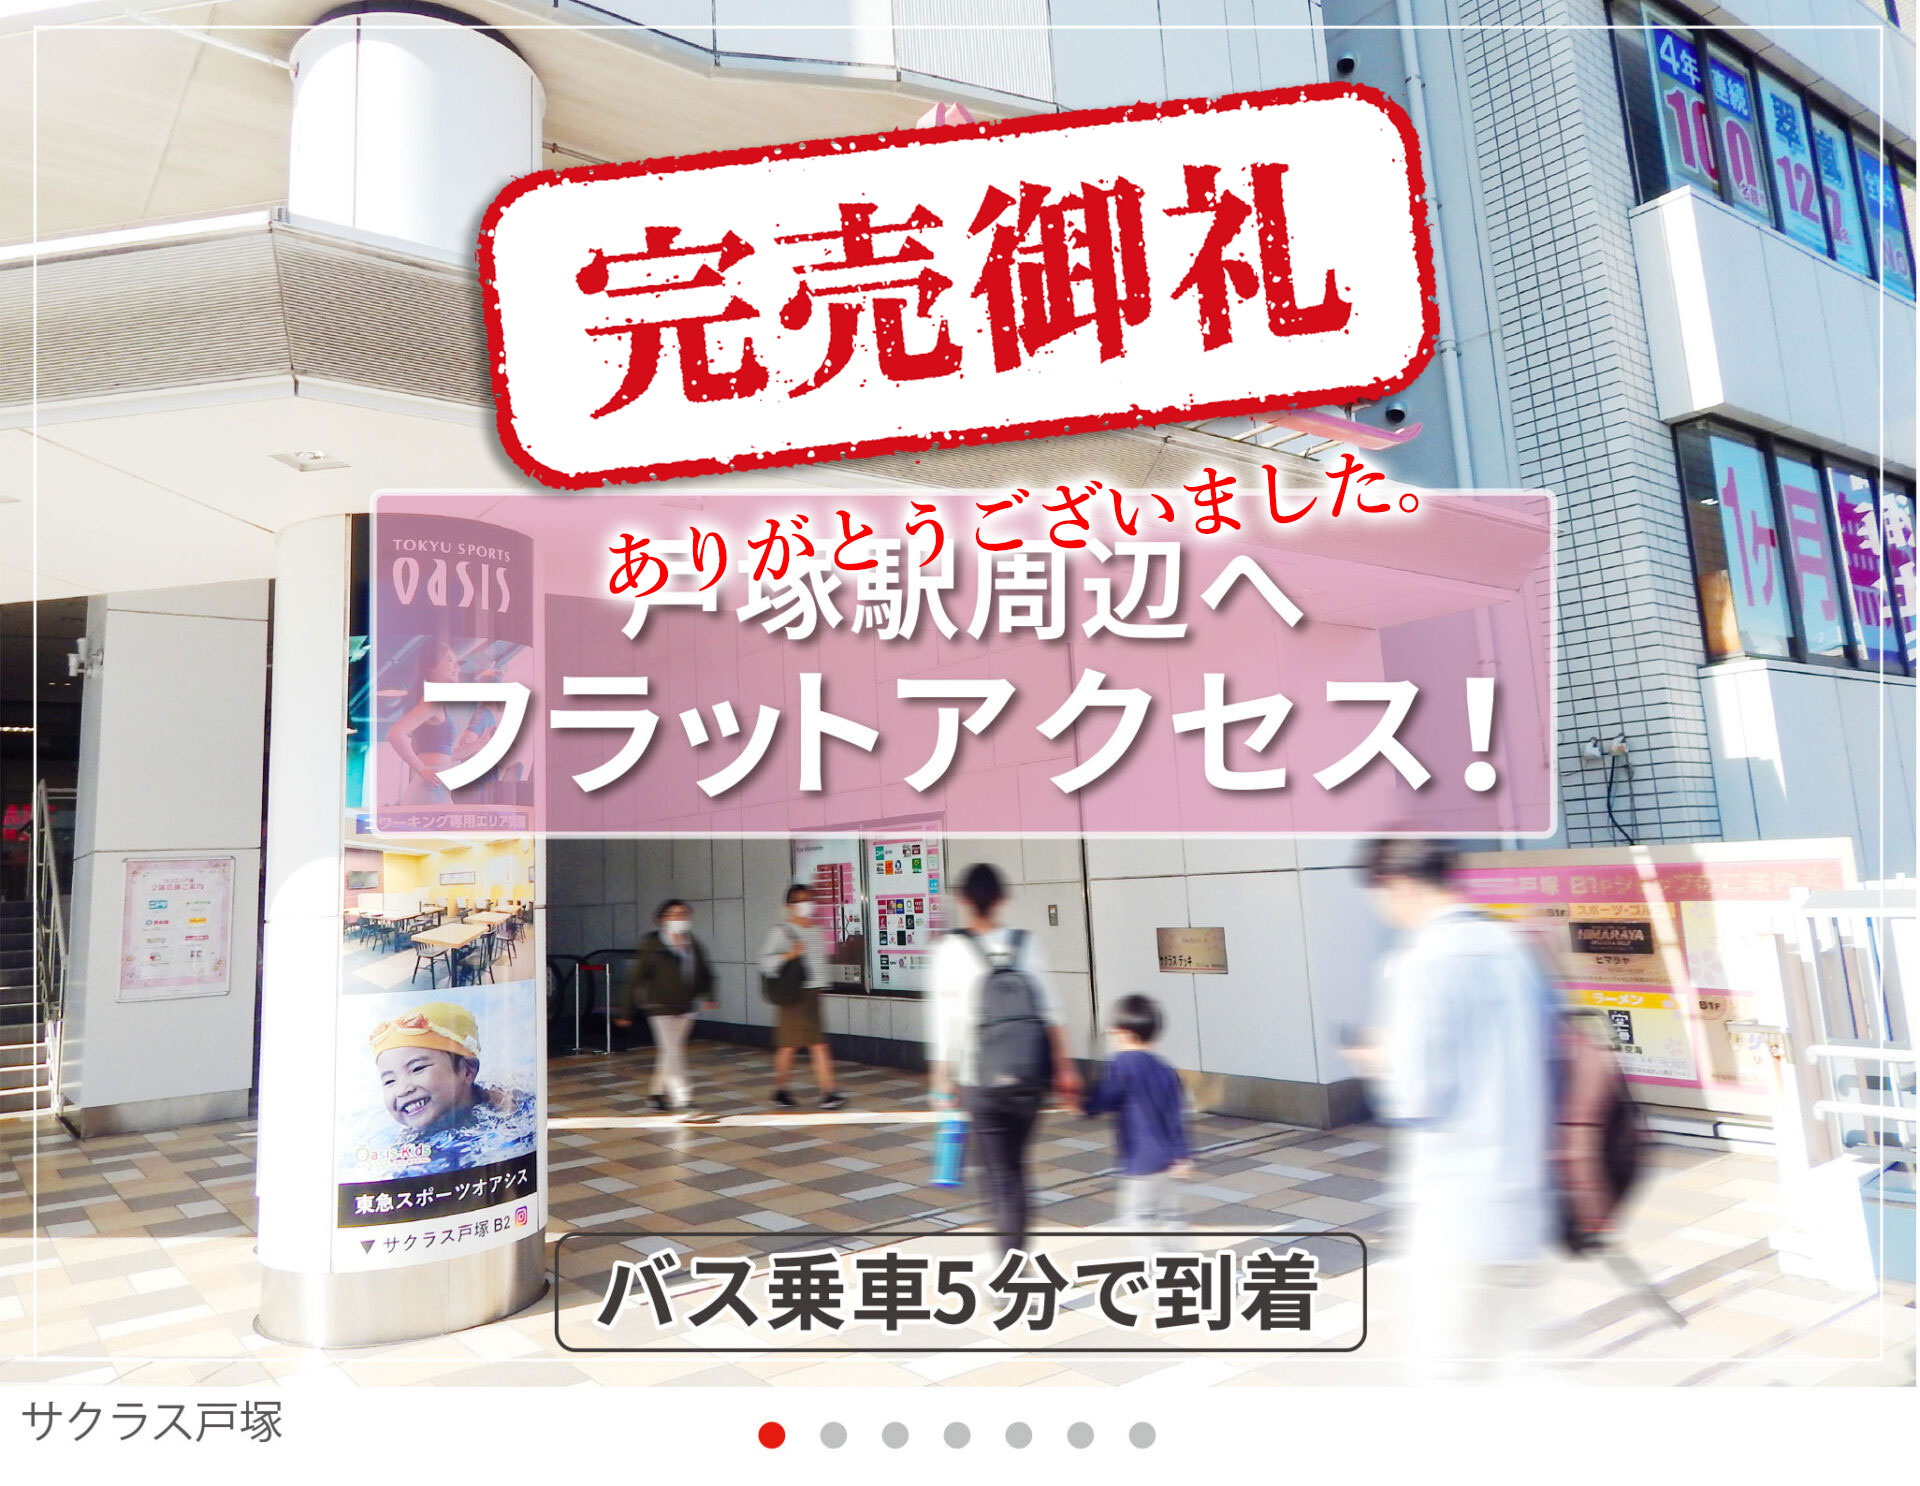 JR戸塚駅へフラットアクセス